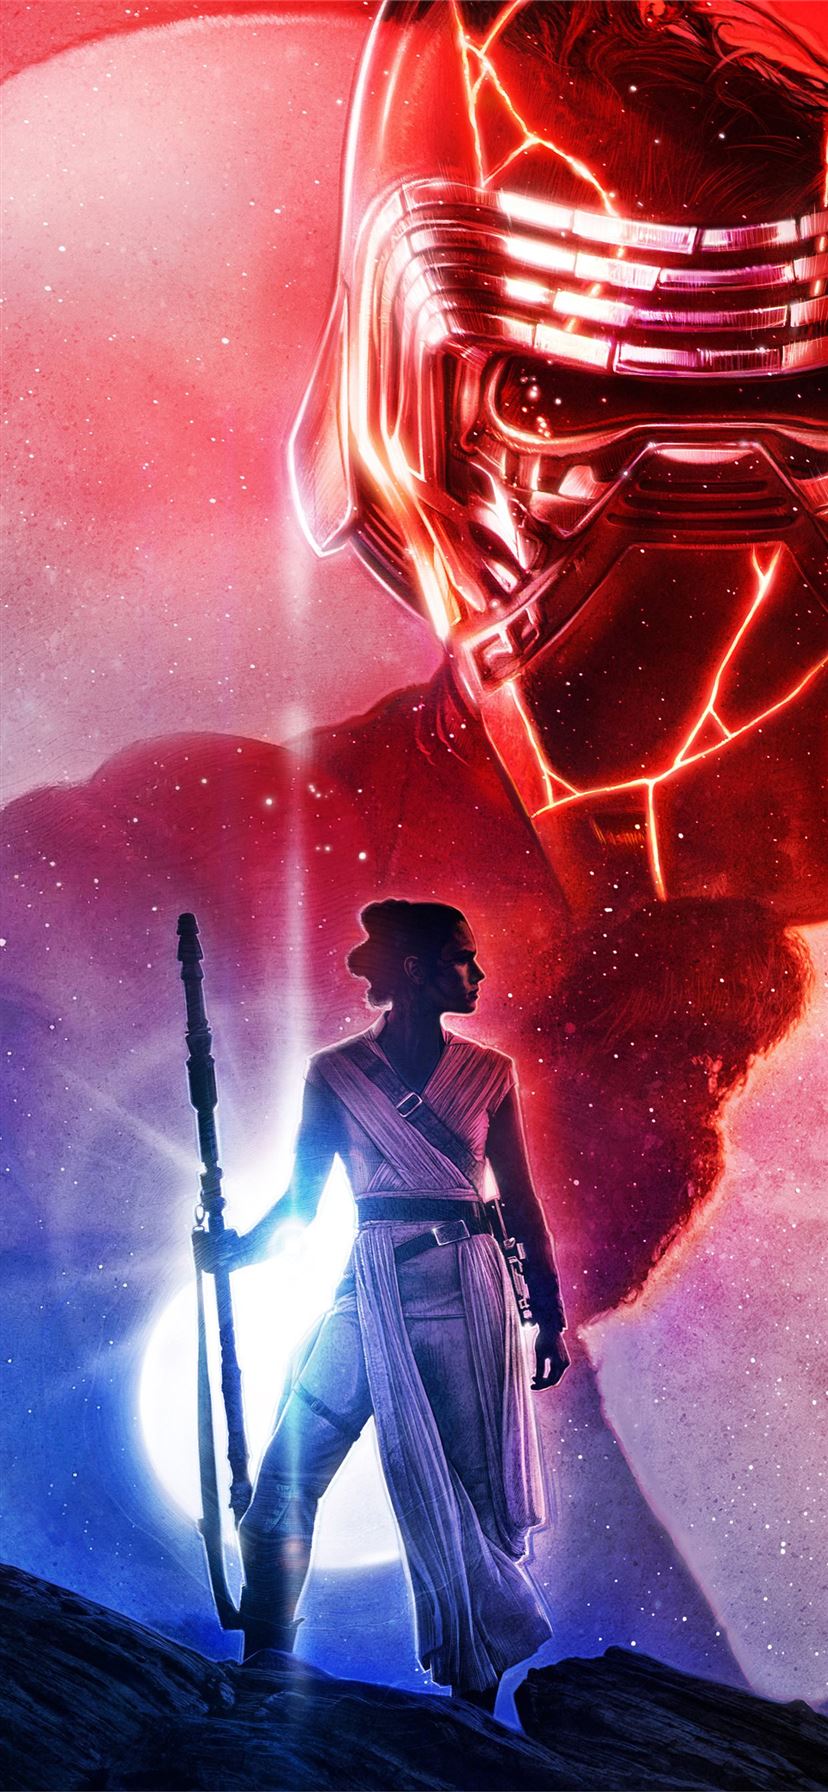 Star Wars The Last Jedi Art 5k iPhone Wallpaper